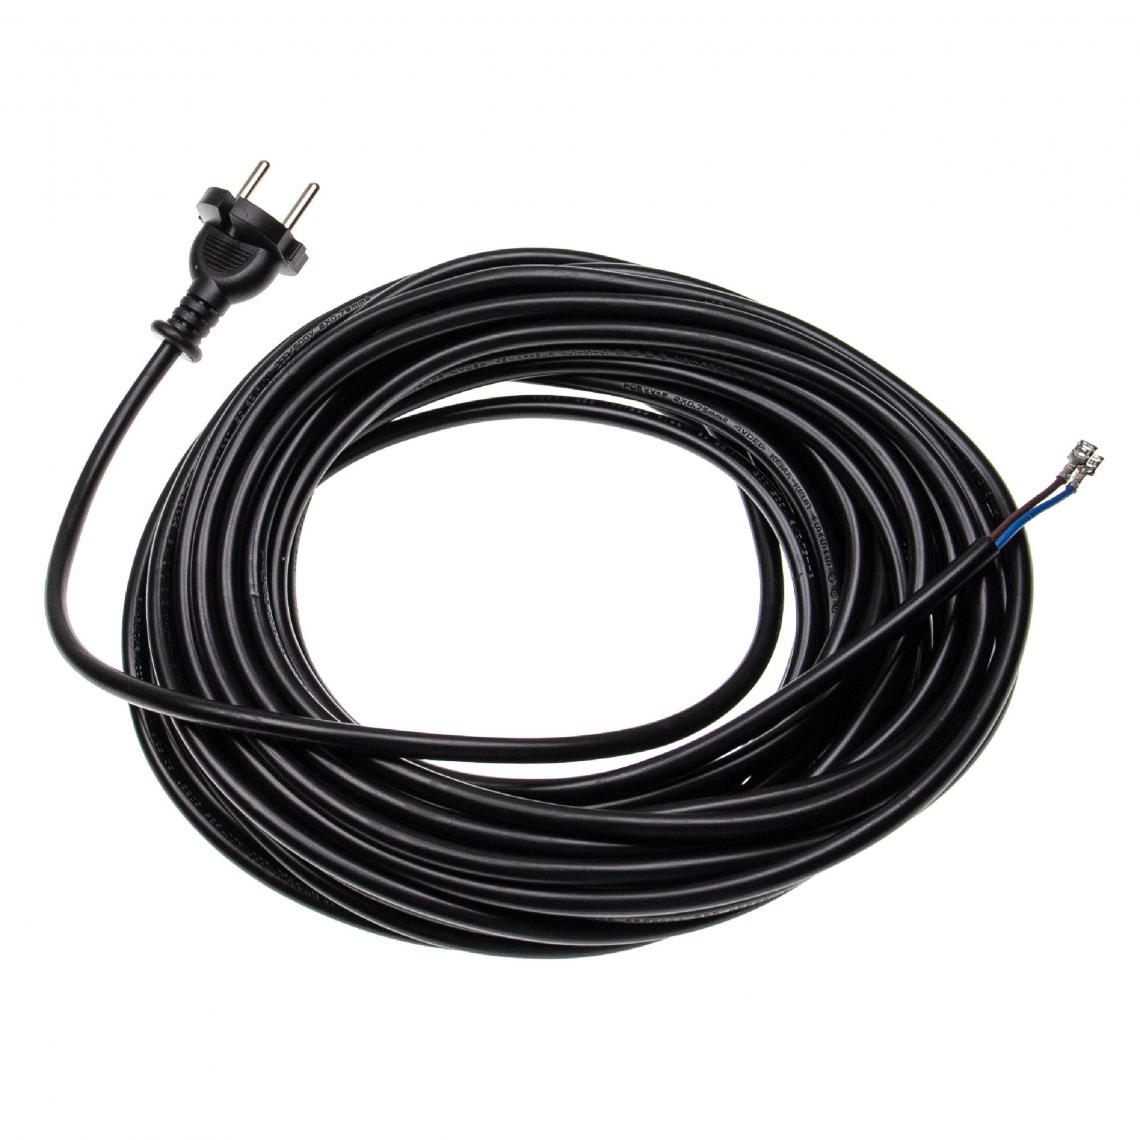 Vhbw - vhbw Câble électrique compatible avec Einhell BT-Serie, BT-VC-Serie, INOX-Serie aspirateurs - 15 m, 4000 W - Accessoire entretien des sols